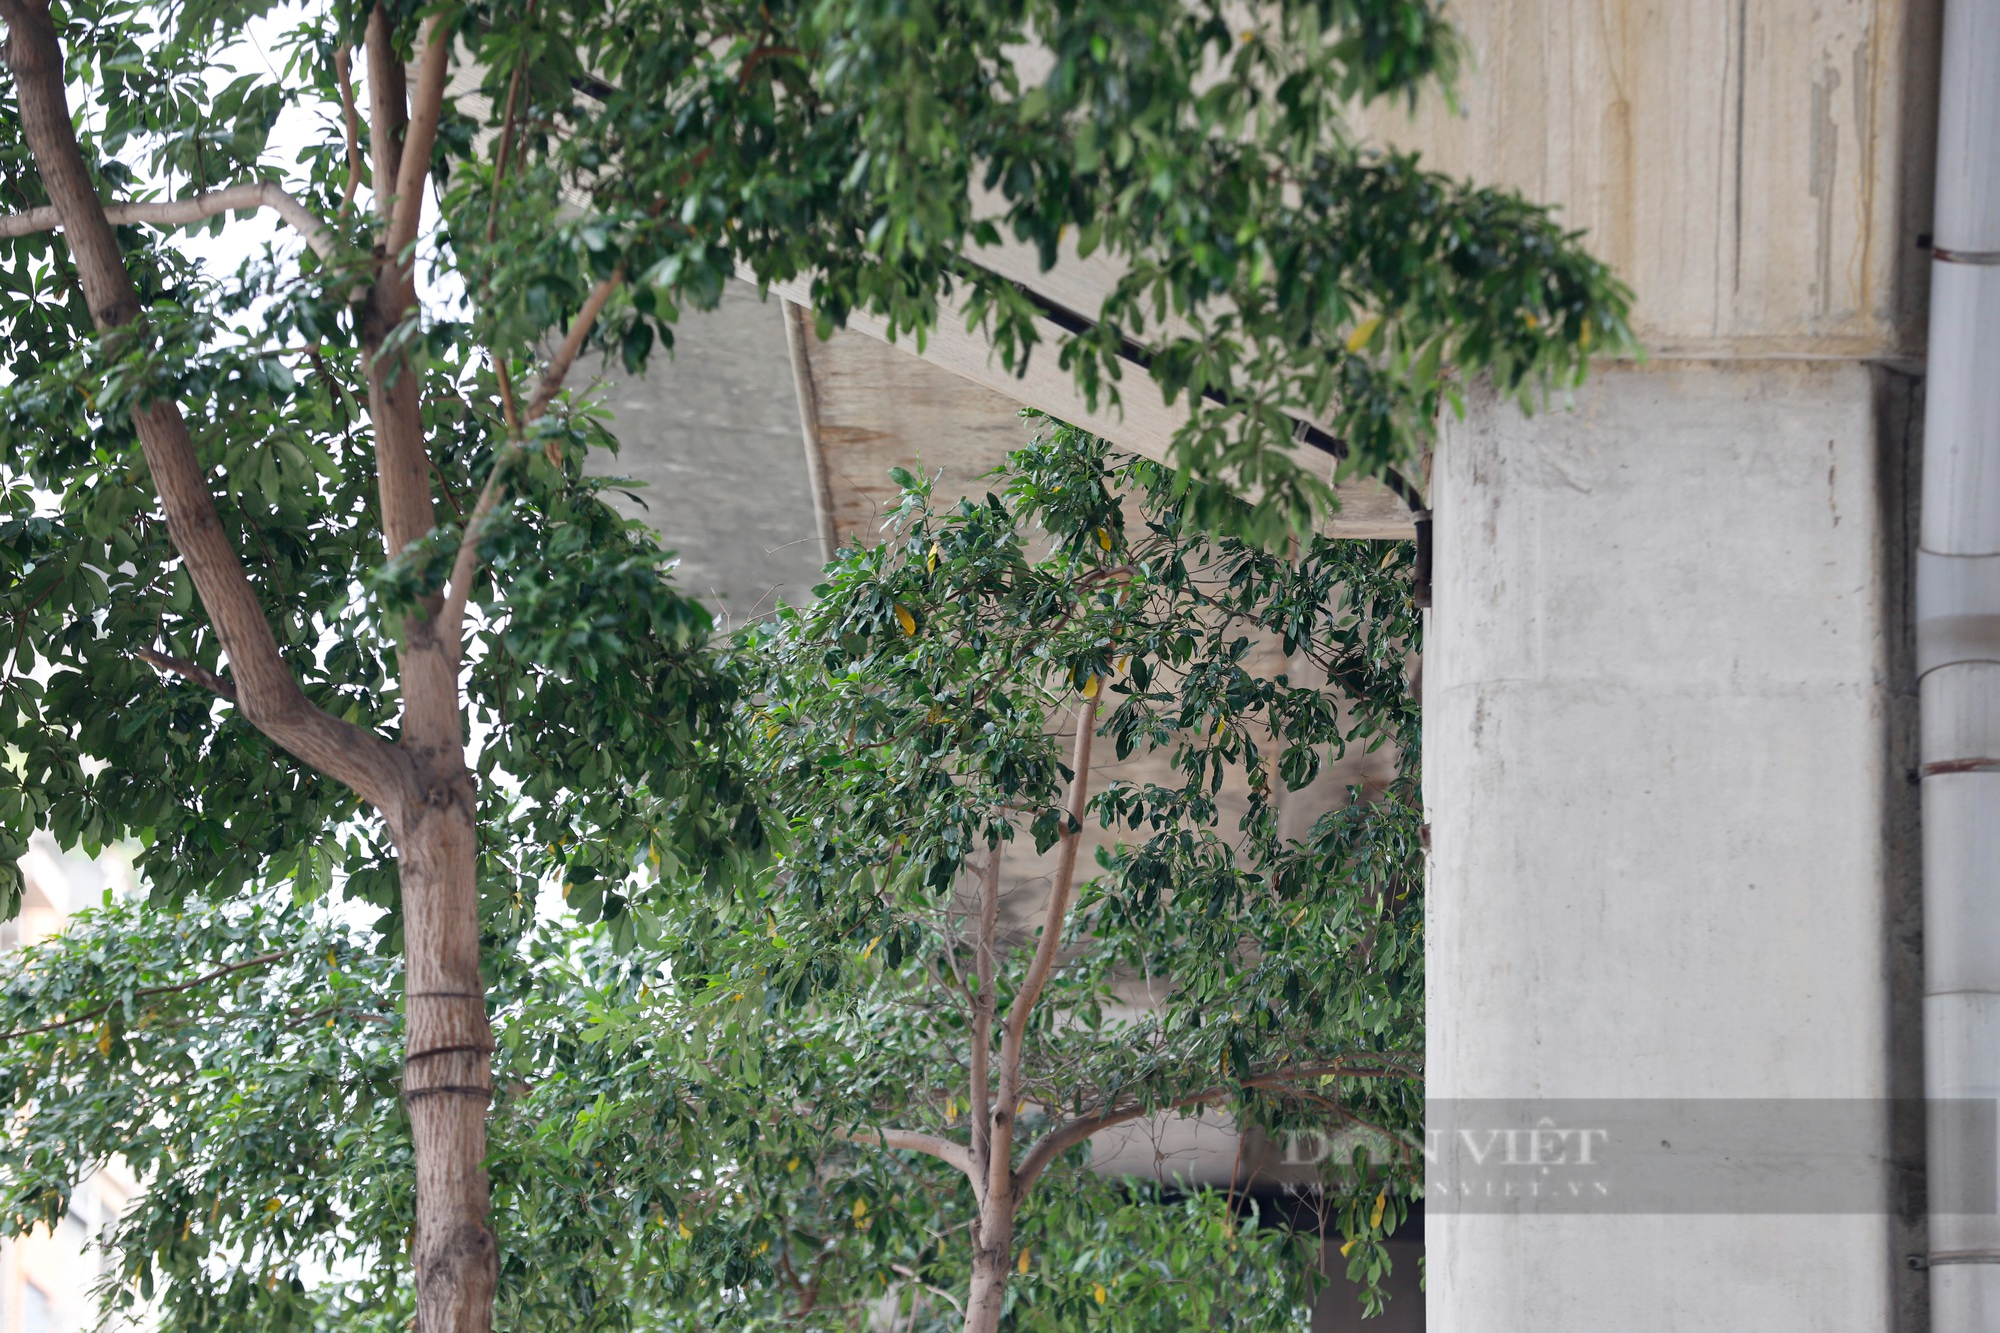 Hàng loạt cây xanh tại Hà Nội khi lớn đã “đụng” vào gầm bê tông đường sắt Cát Linh-Hà Đông - Ảnh 2.